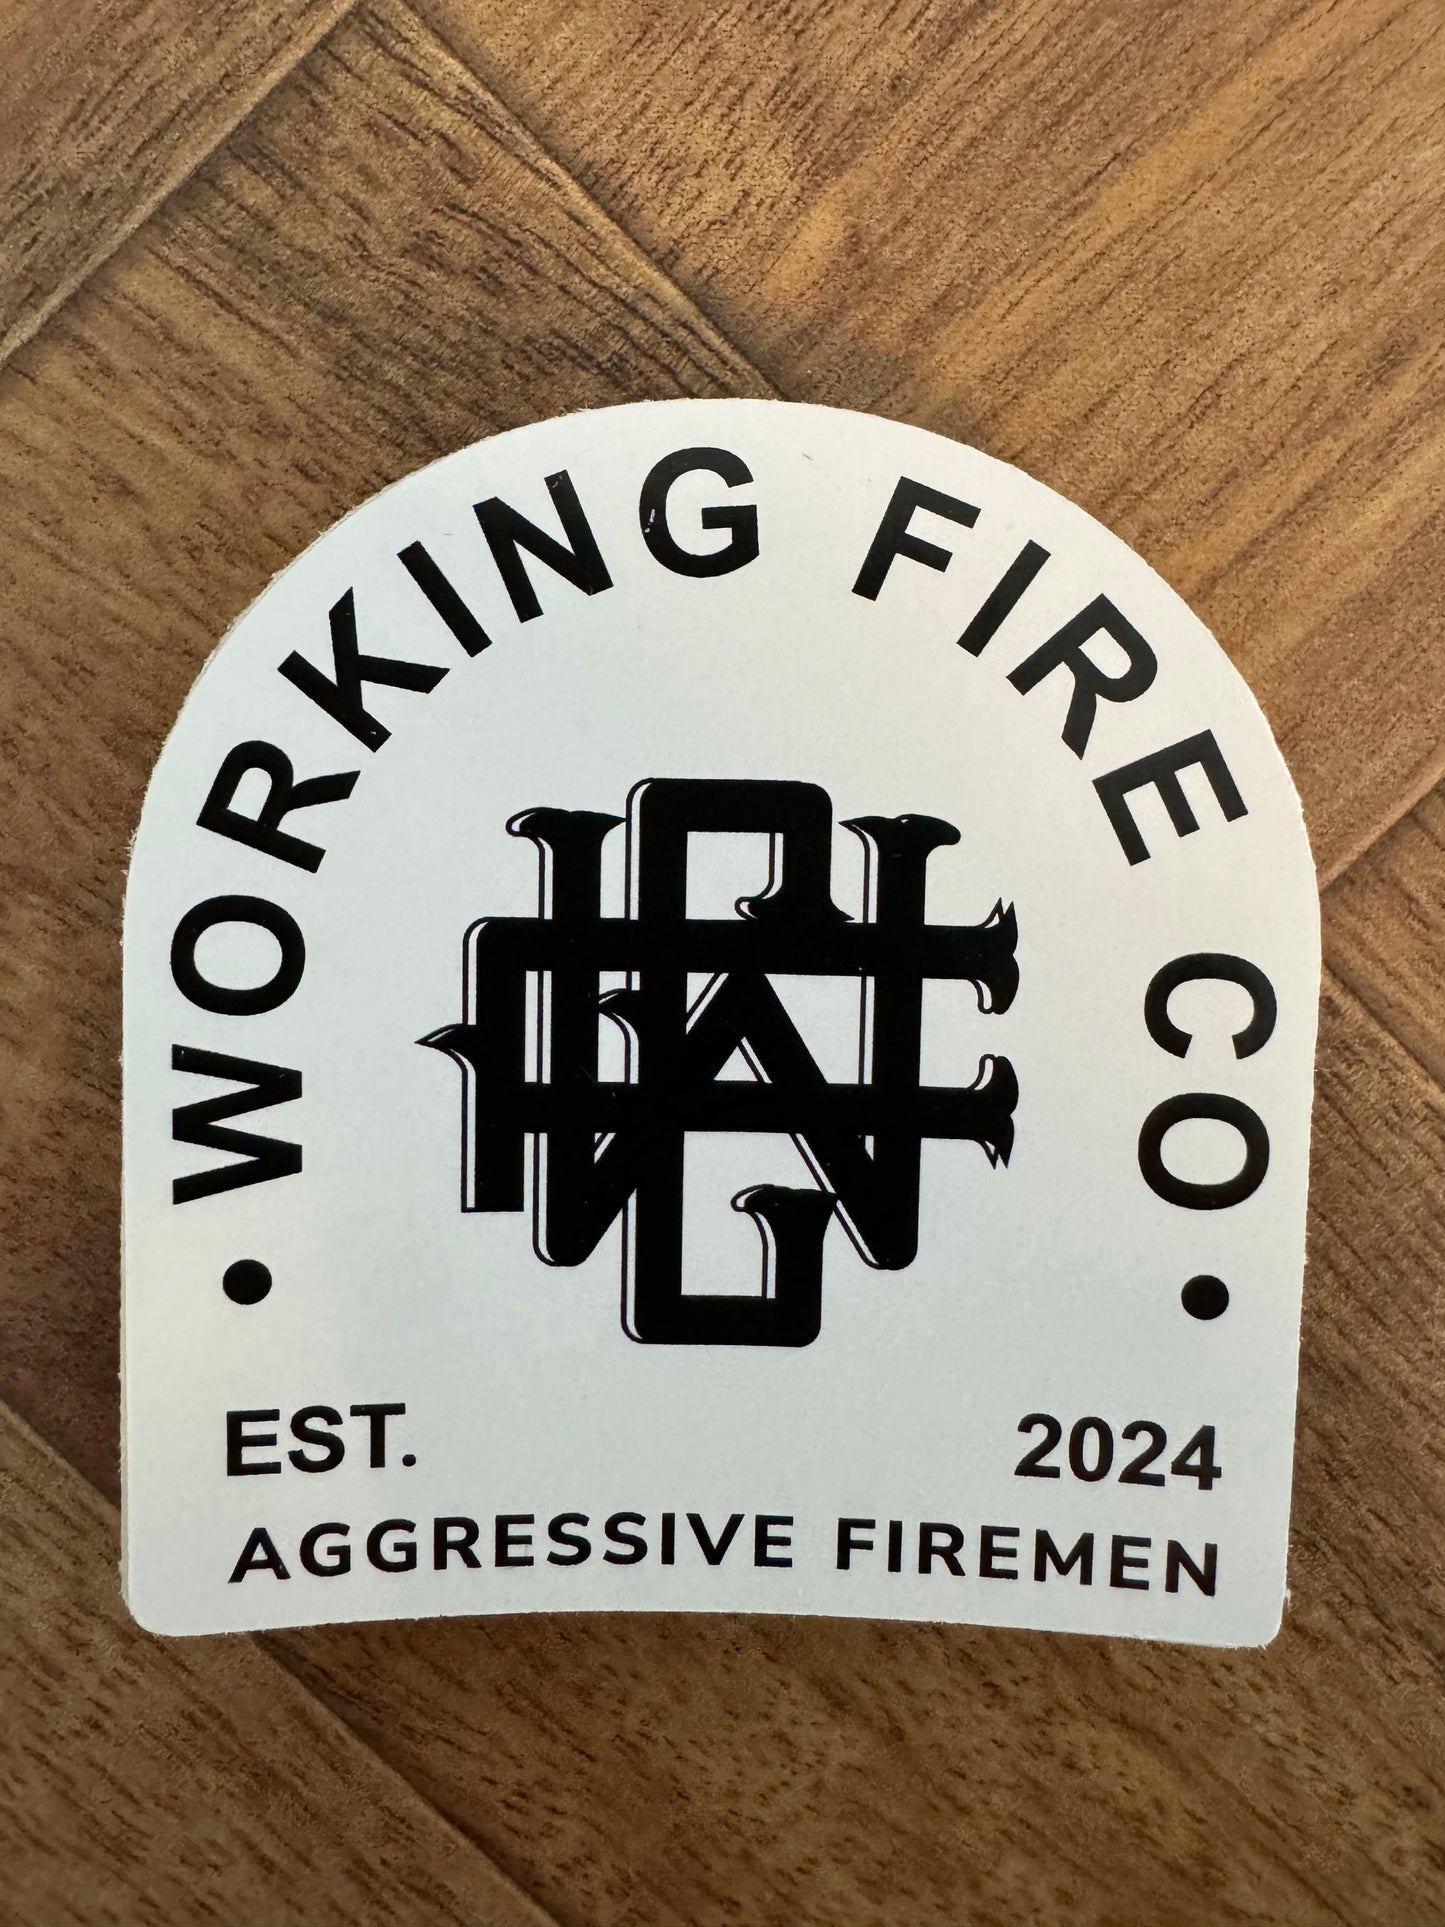 Working Fire Co Alternate Logo